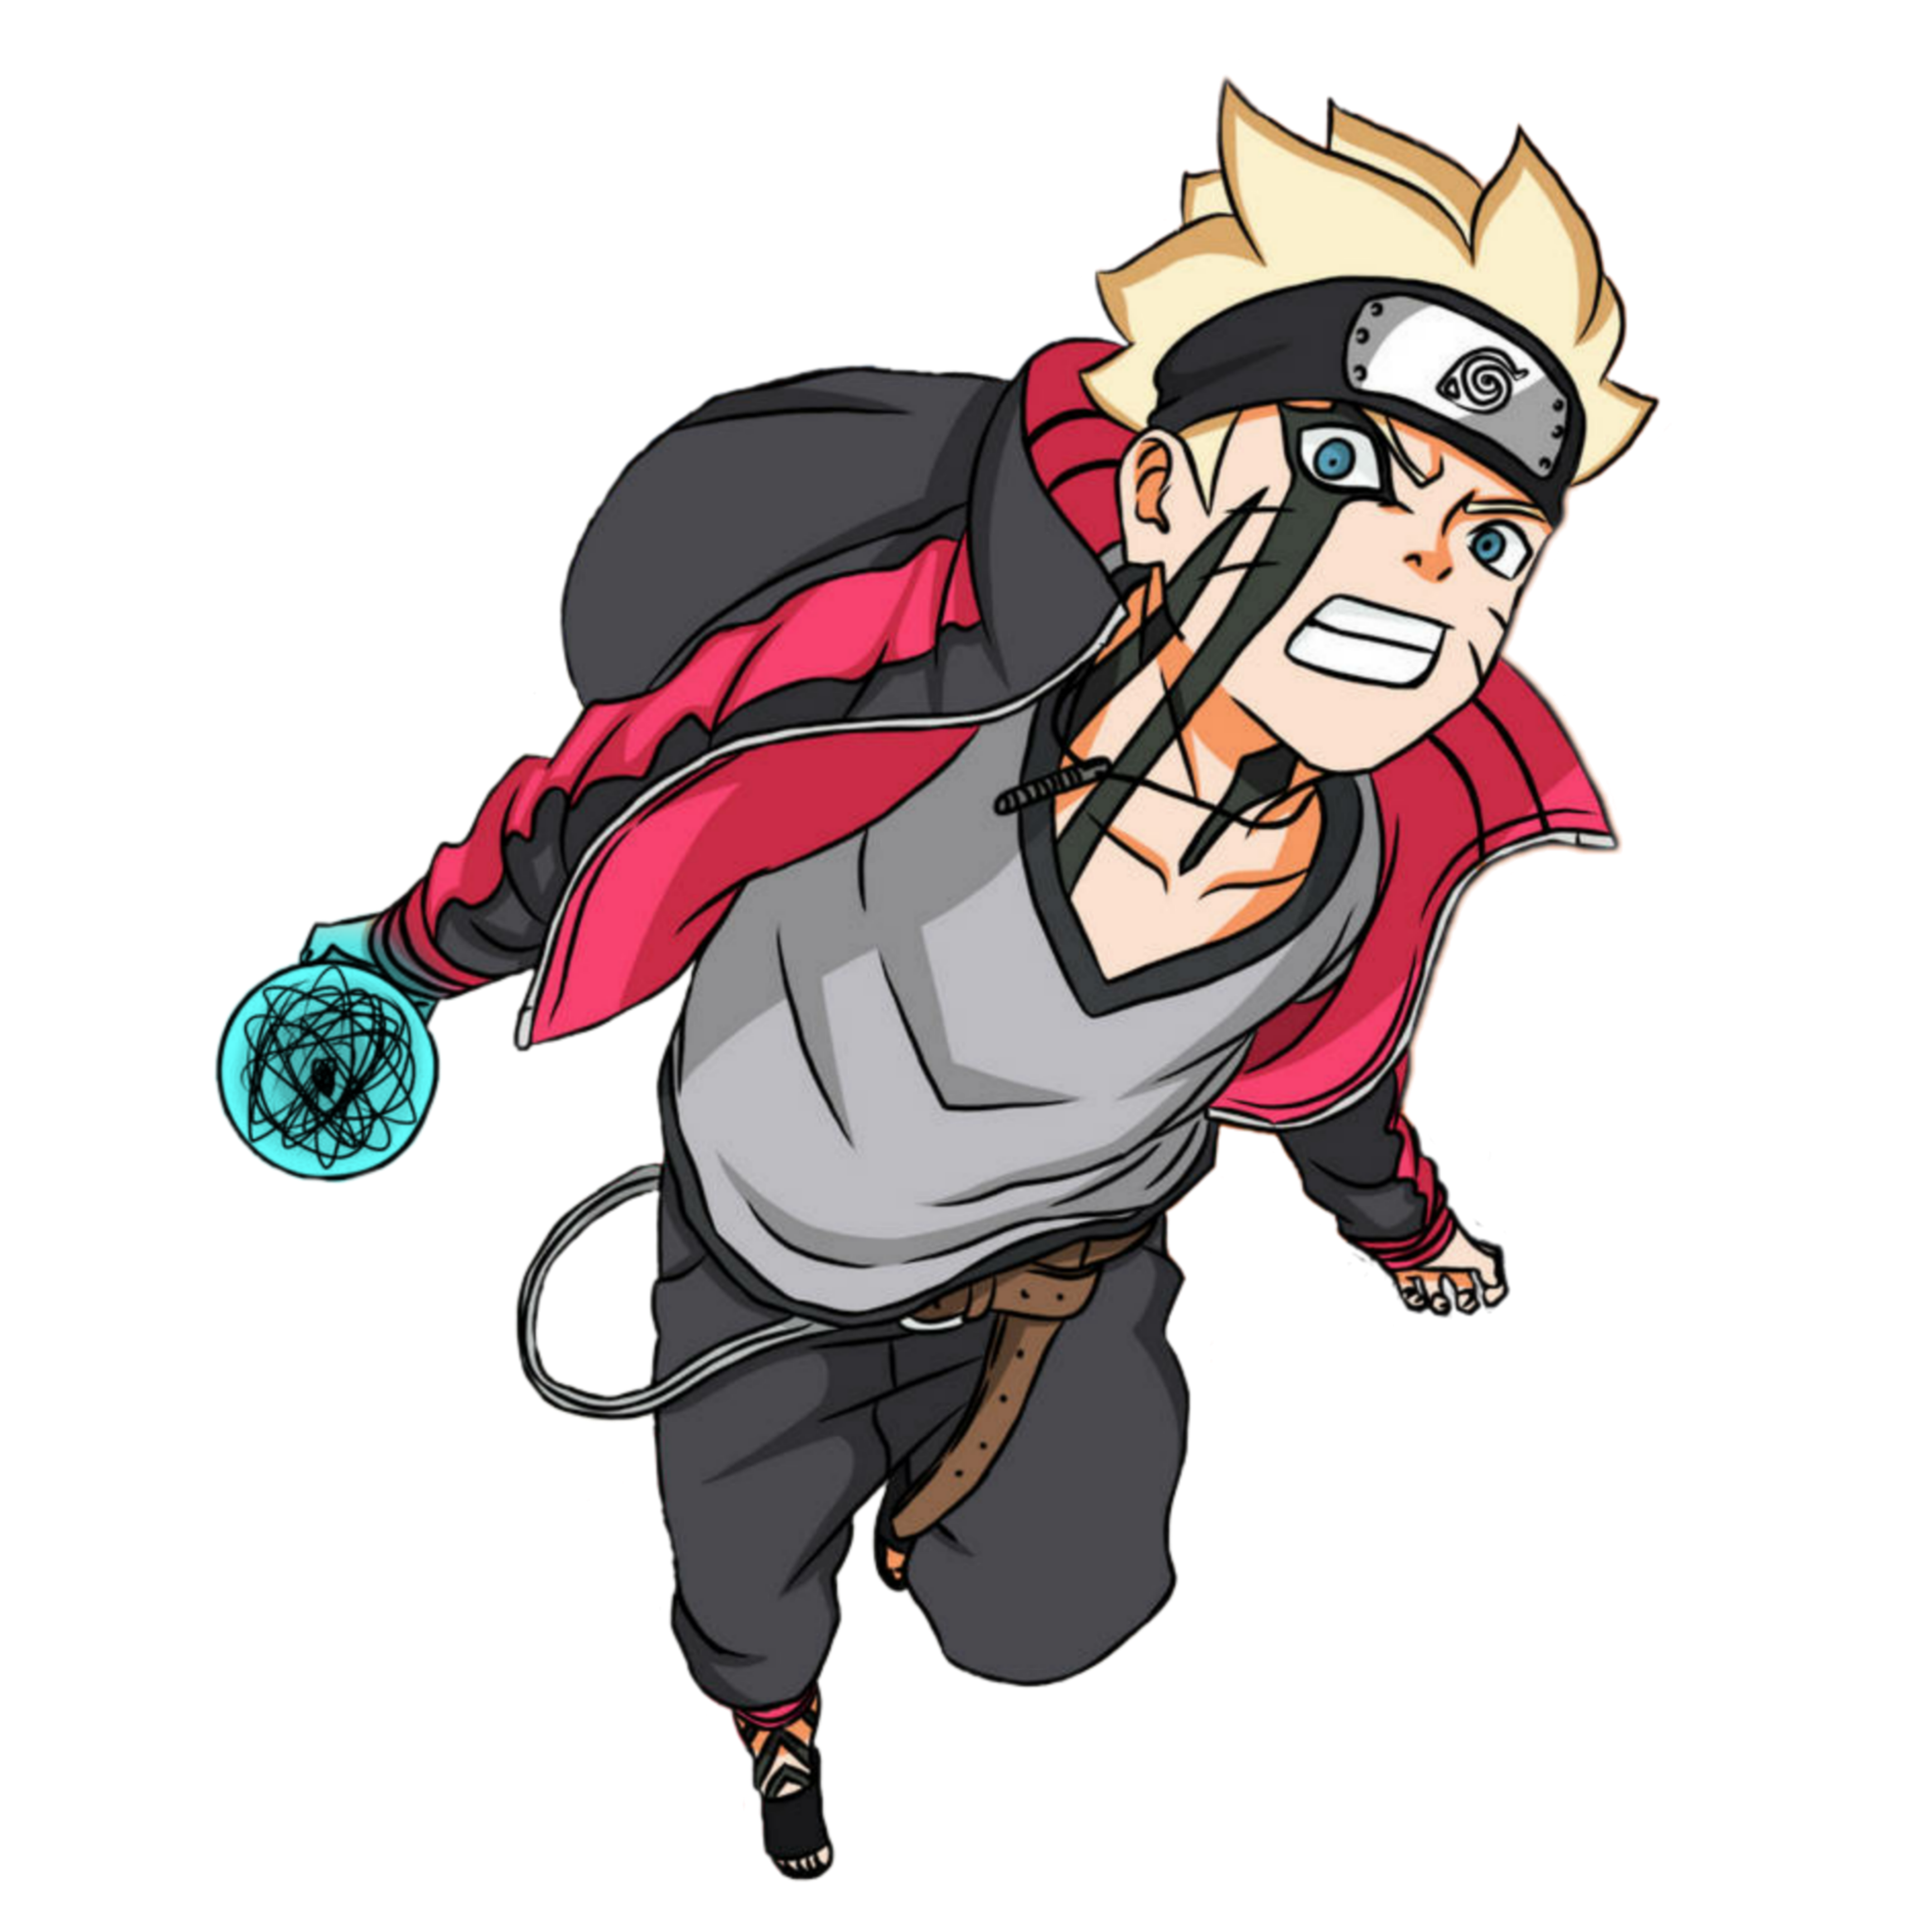 Naruto Uzumaki - một trong những nhân vật anime được yêu thích nhất. Bạn muốn tìm kiếm một hình ảnh độc đáo của Naruto Uzumaki? Bạn đã đến đúng chỗ! Hãy tải xuống hình ảnh PNG của Naruto Uzumaki picture và ngắm nhìn các chi tiết tuyệt vời của nhân vật.